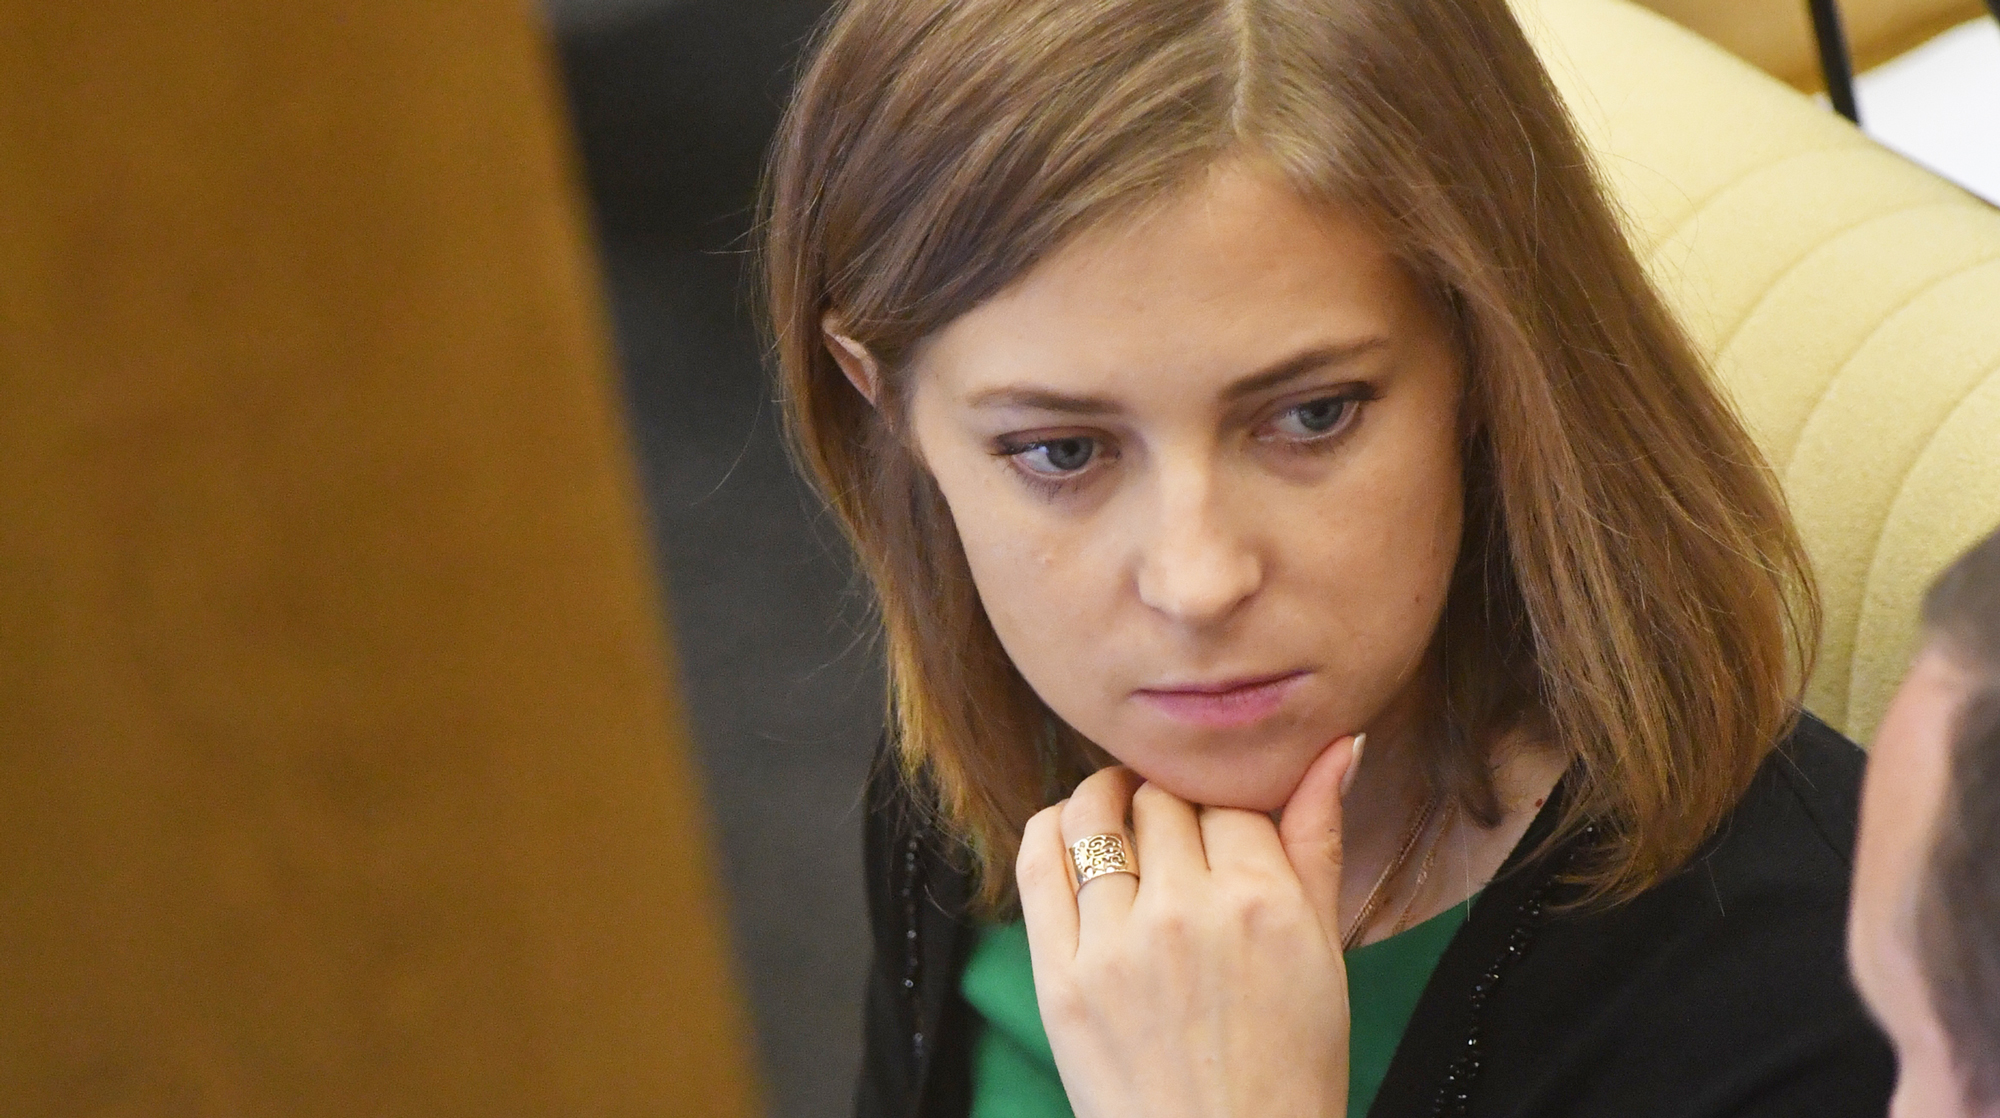 Депутат Поклонская фактически полностью исчезла из медиасреды и не проявляет никакой активности в Госдуме Фото: © GLOBAL LOOK press